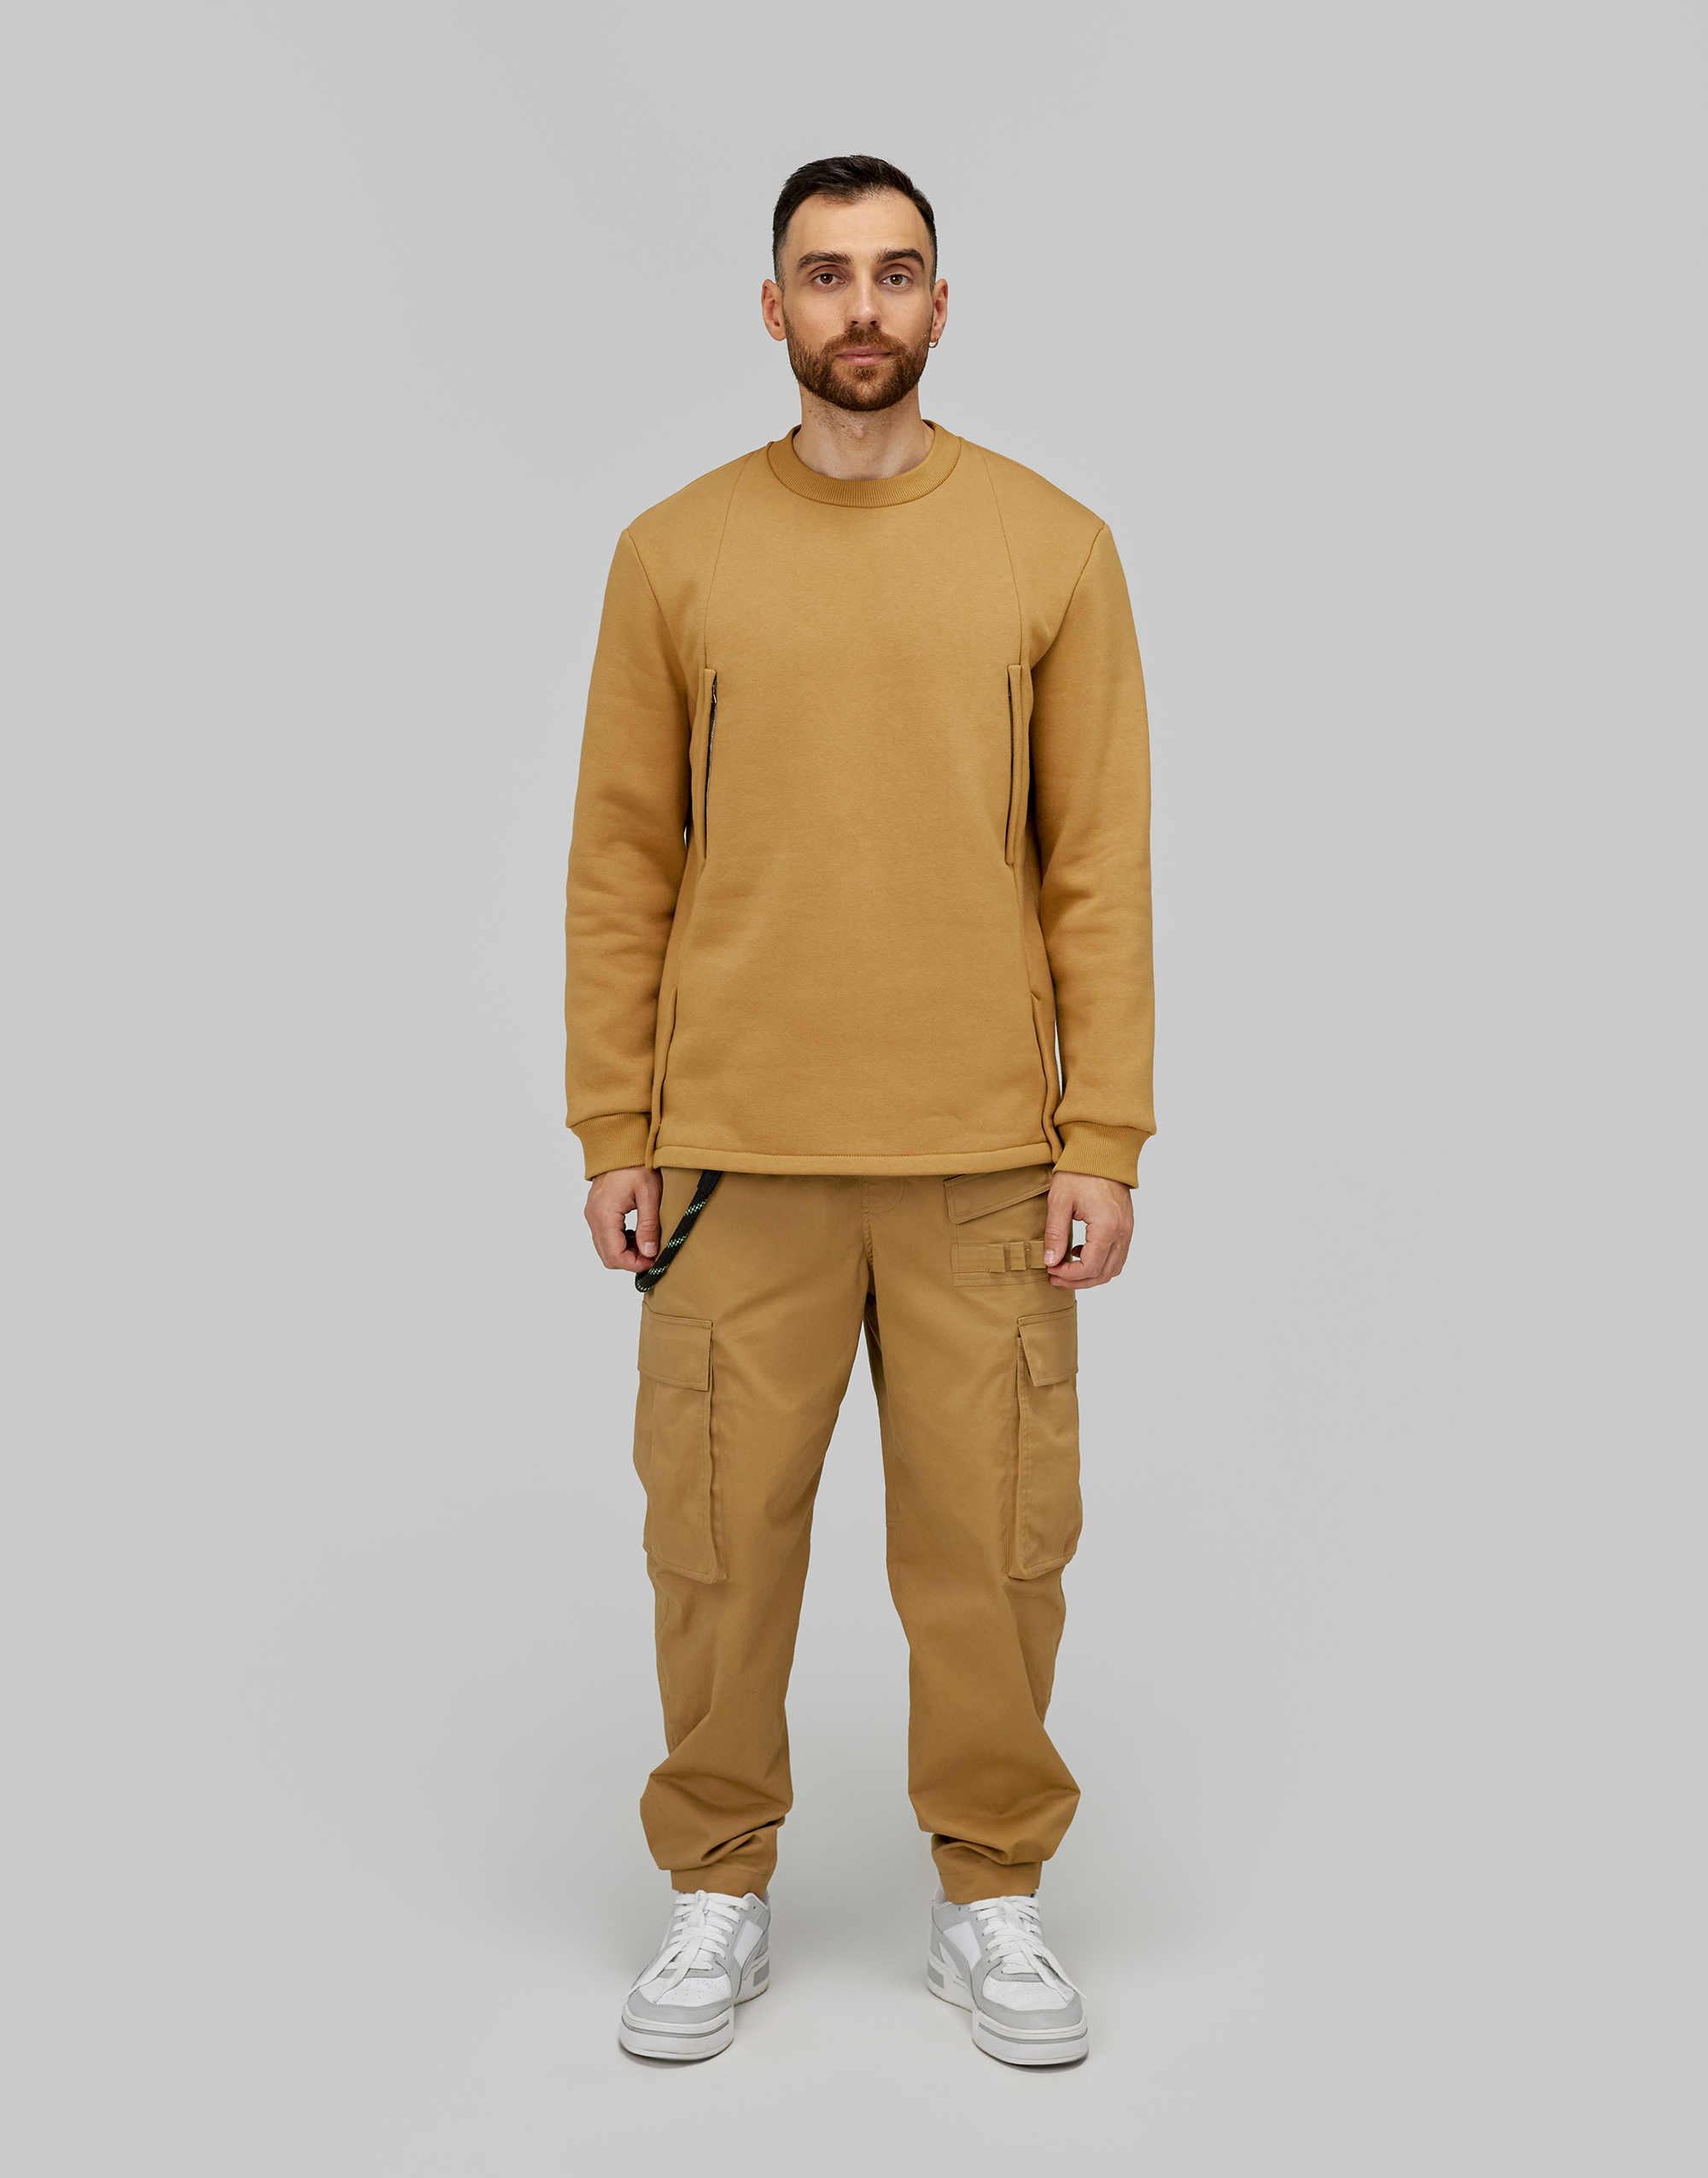 Sweatshirt, pattern №952